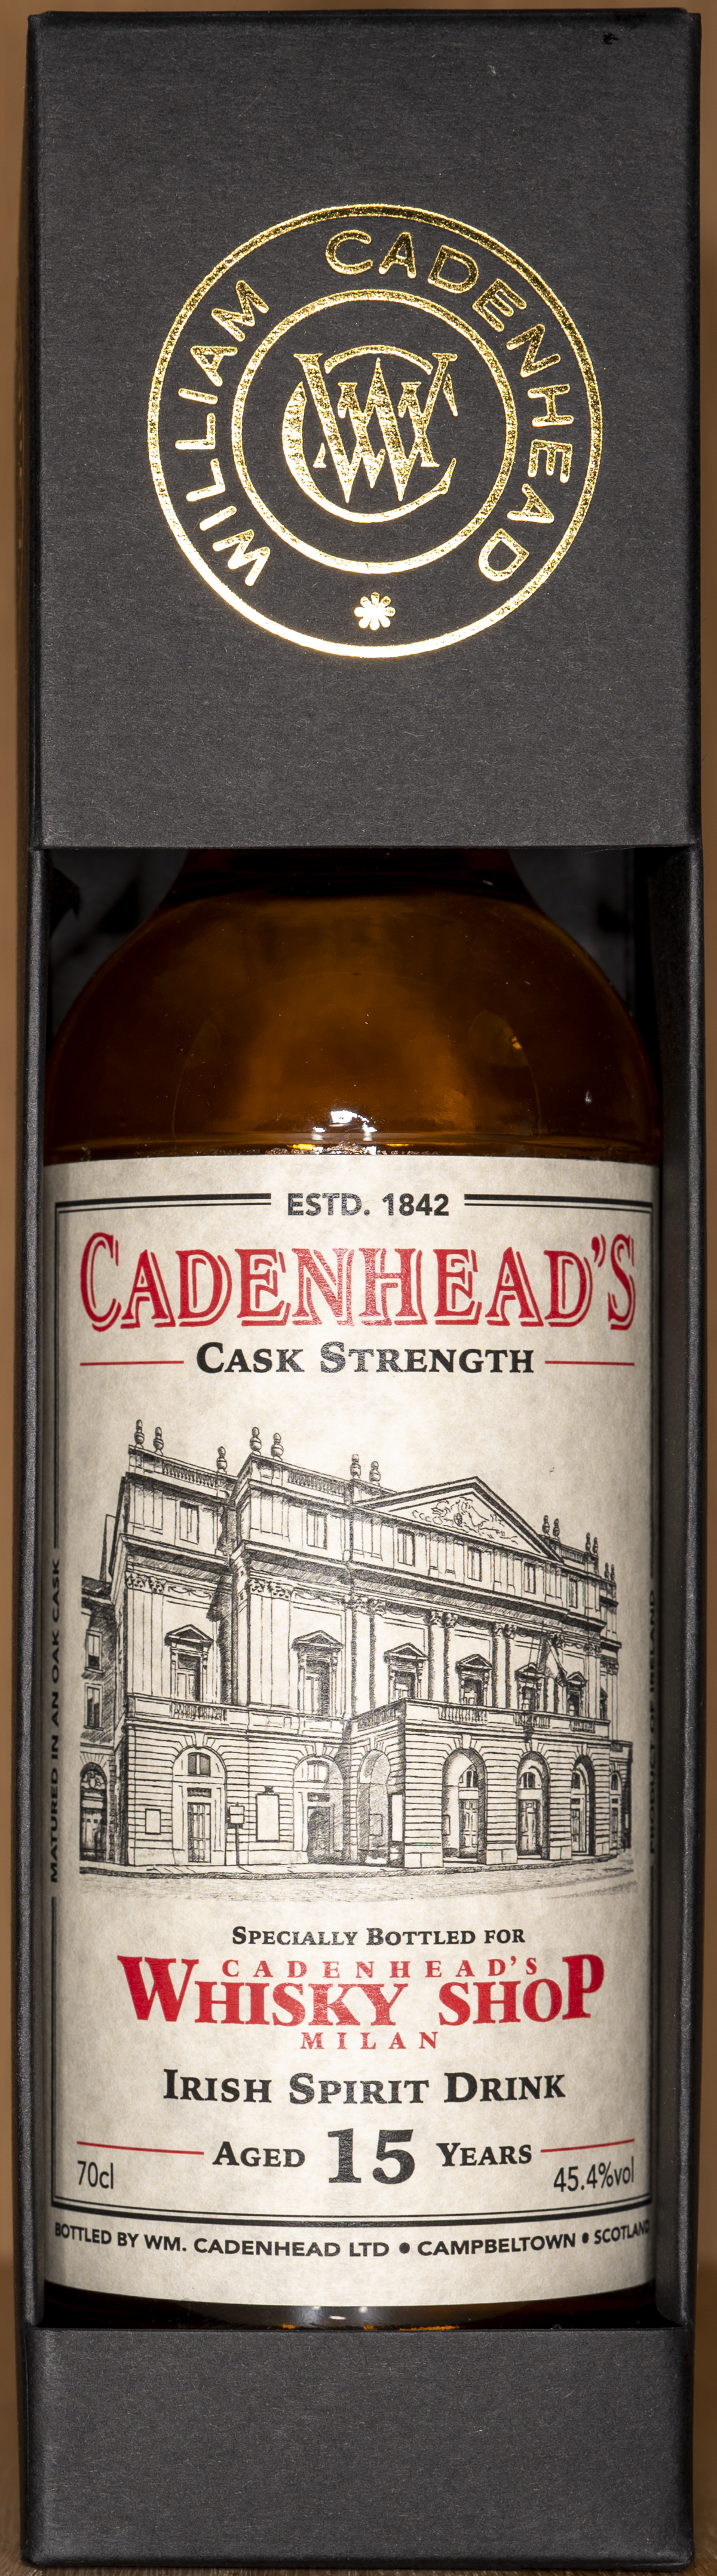 Billede: DSC_4998 - Cadenheads Whisky Shop Milan - Irish Spirit Drink 15 years - box front.jpg